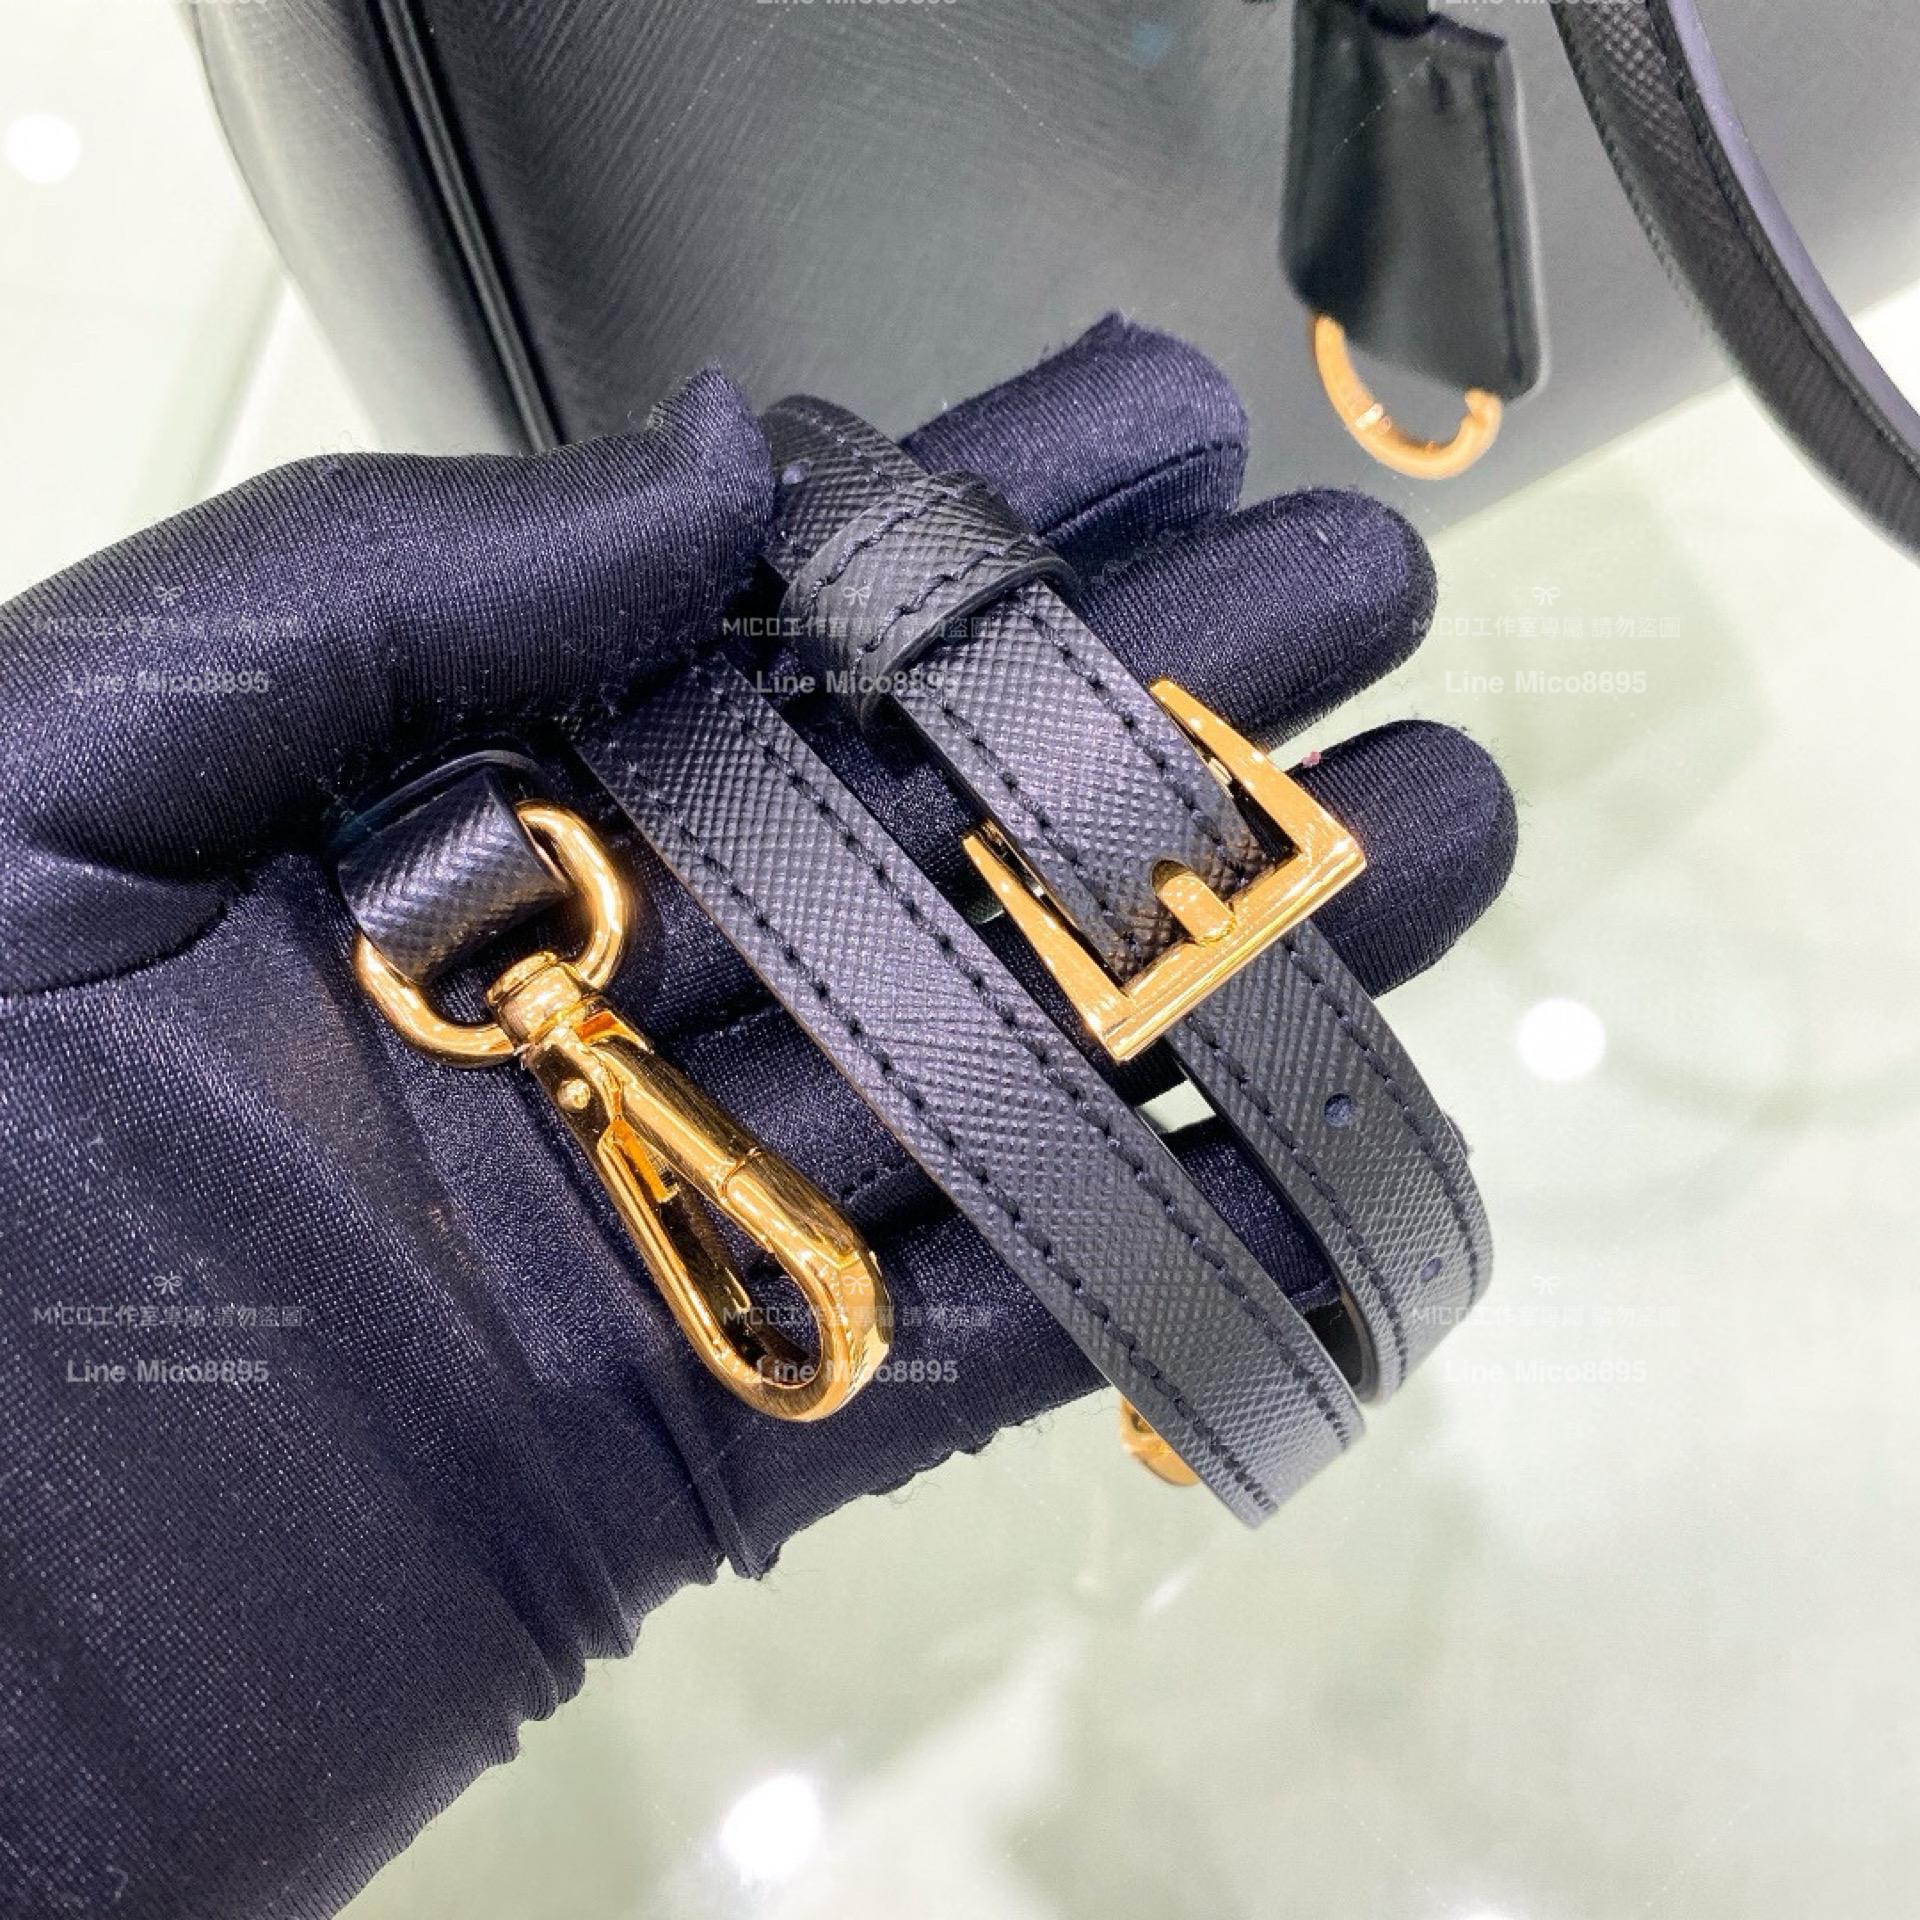 Prada 經典Galleria Saffiano皮革手袋-黑色「殺手包 大號/32cm 公事包